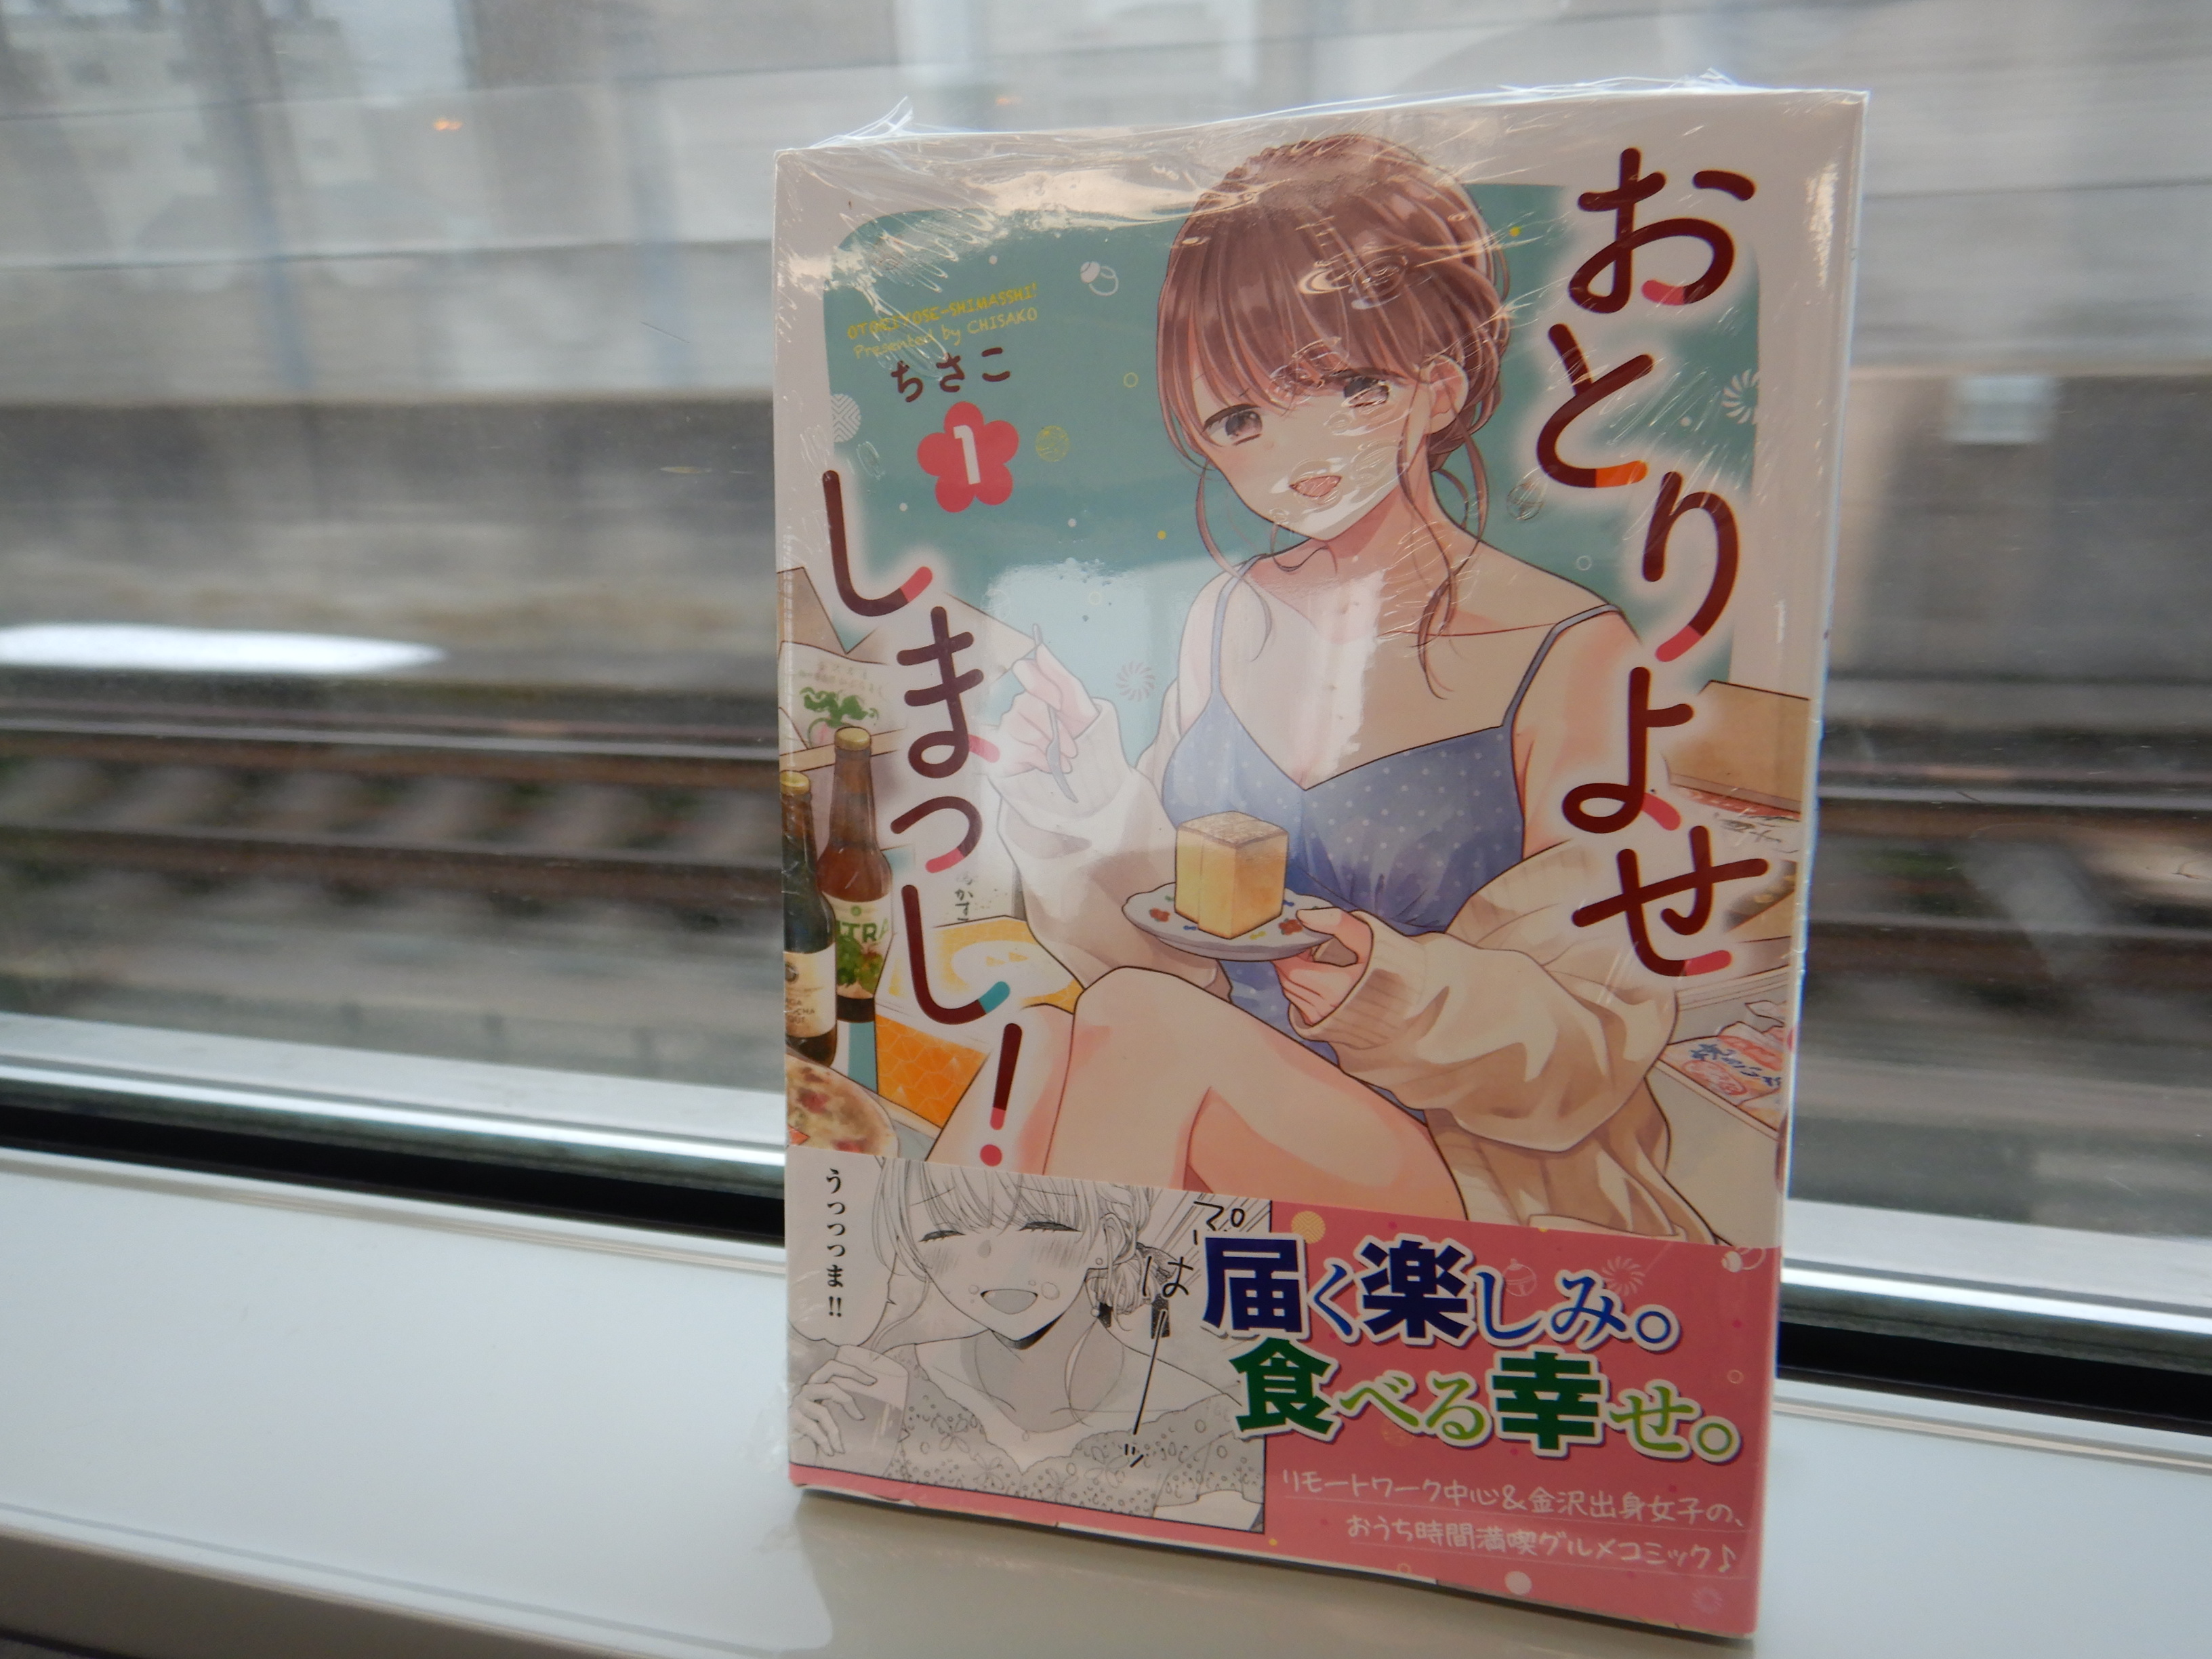 金沢行きの普通電車の中で撮影した「おとりよせしまっし!」第1巻。